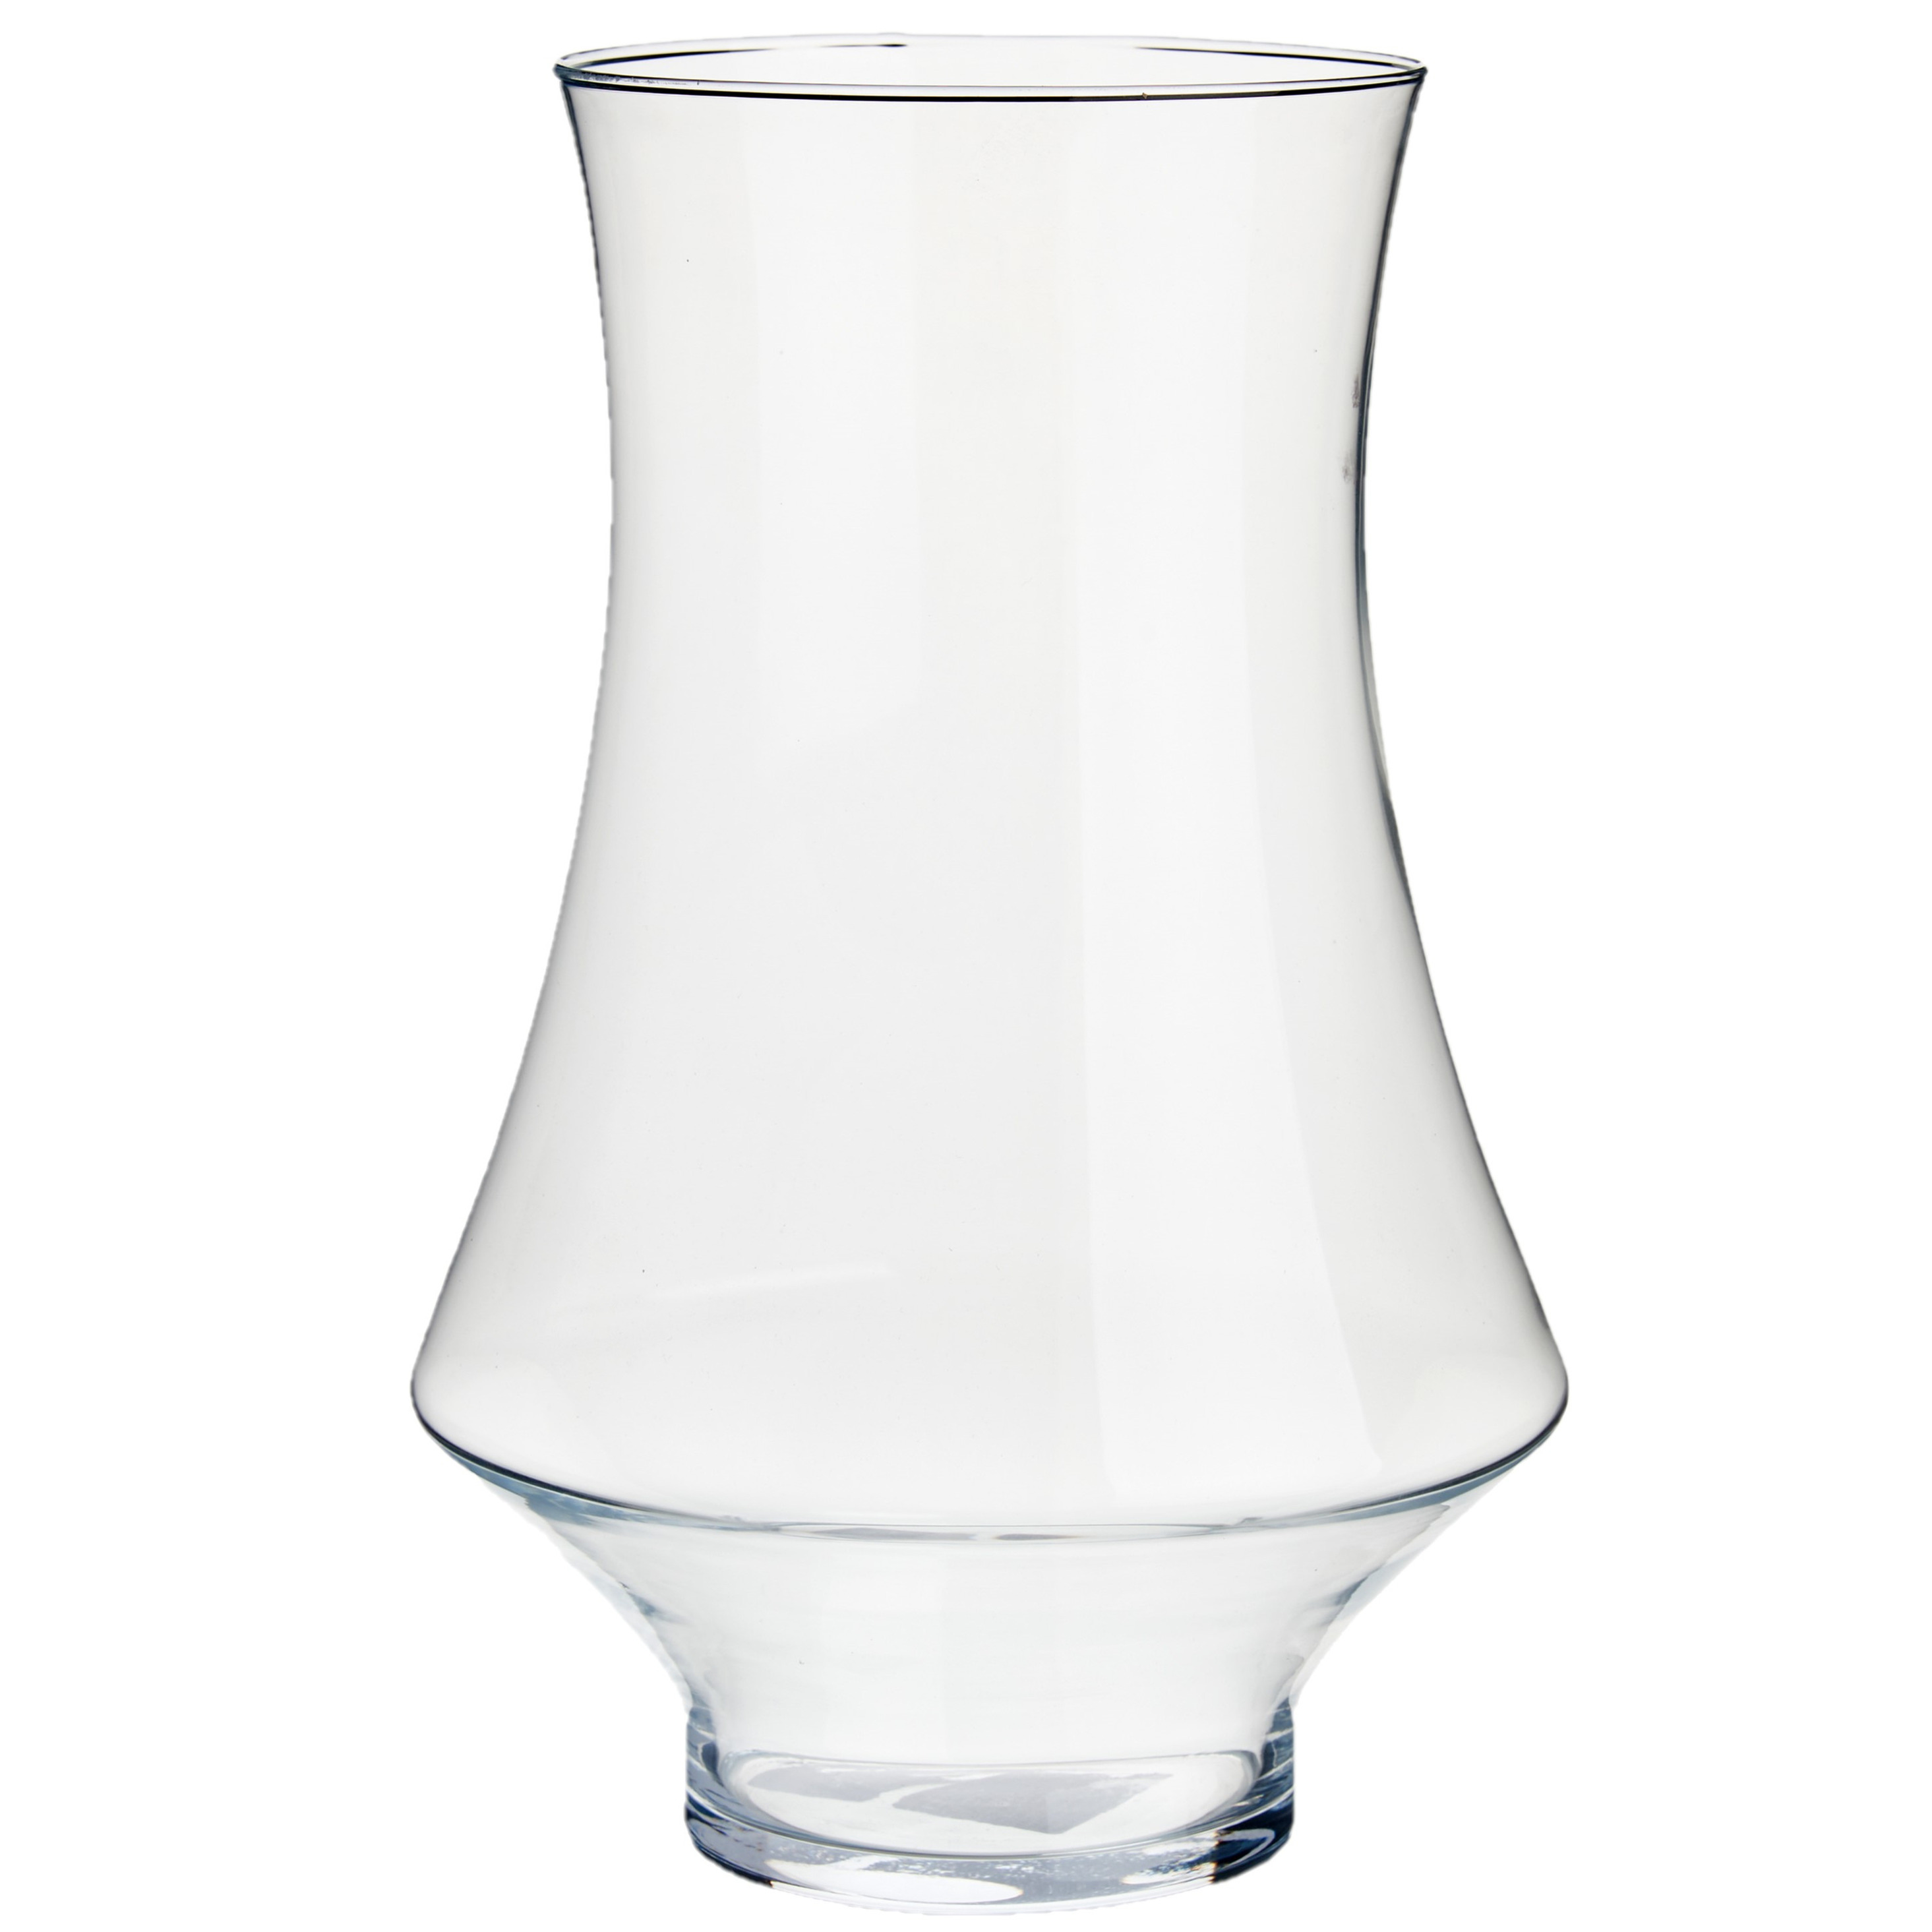 Bloemenvaas van glas 20 x 31 cm